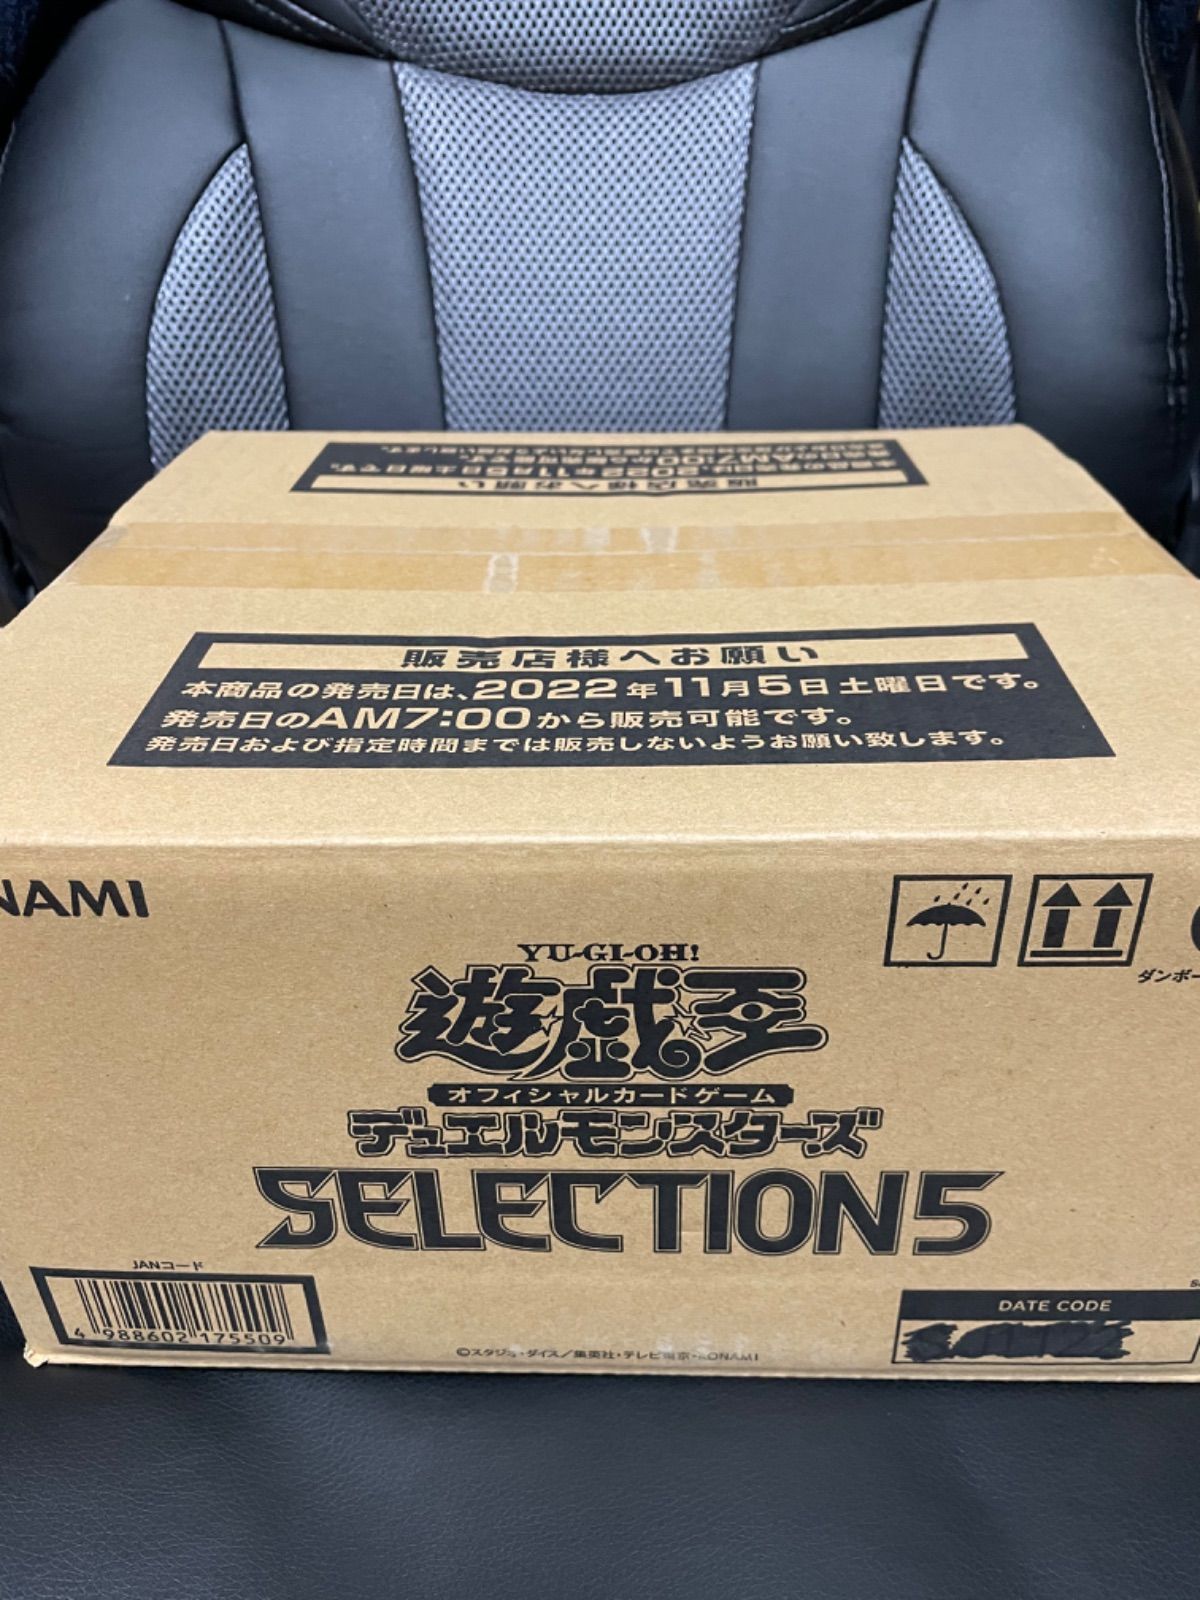 遊戯王 セレクション5 selection5 カートン 24BOX - 遊戯王